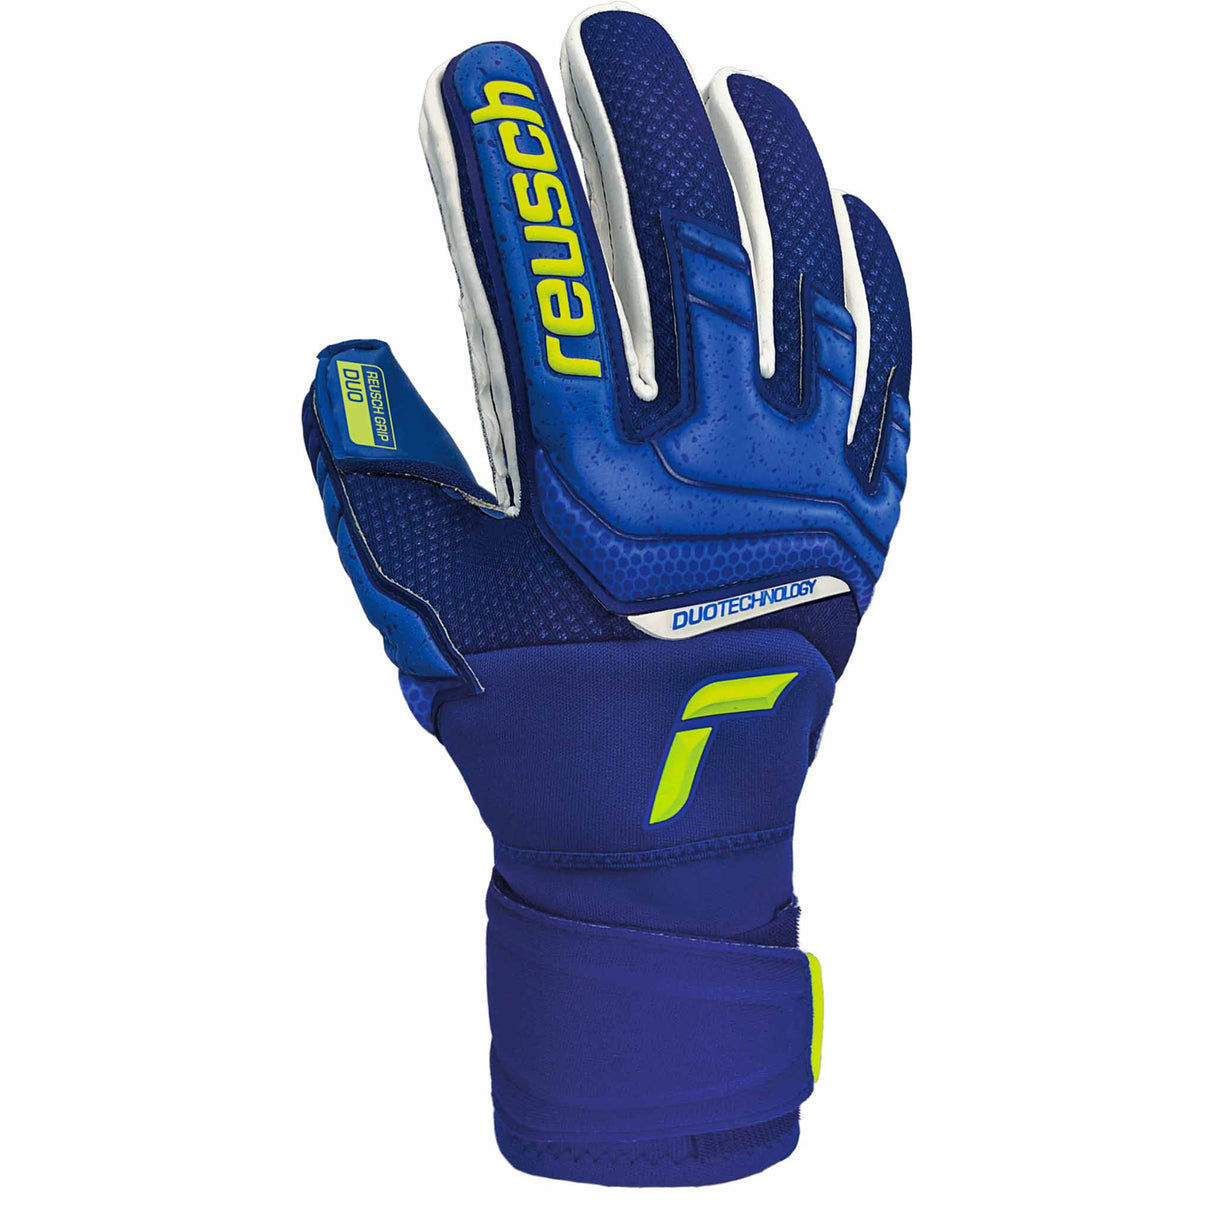 Reusch Attrakt Duo gants de gardien de soccer - Bleu / Vert